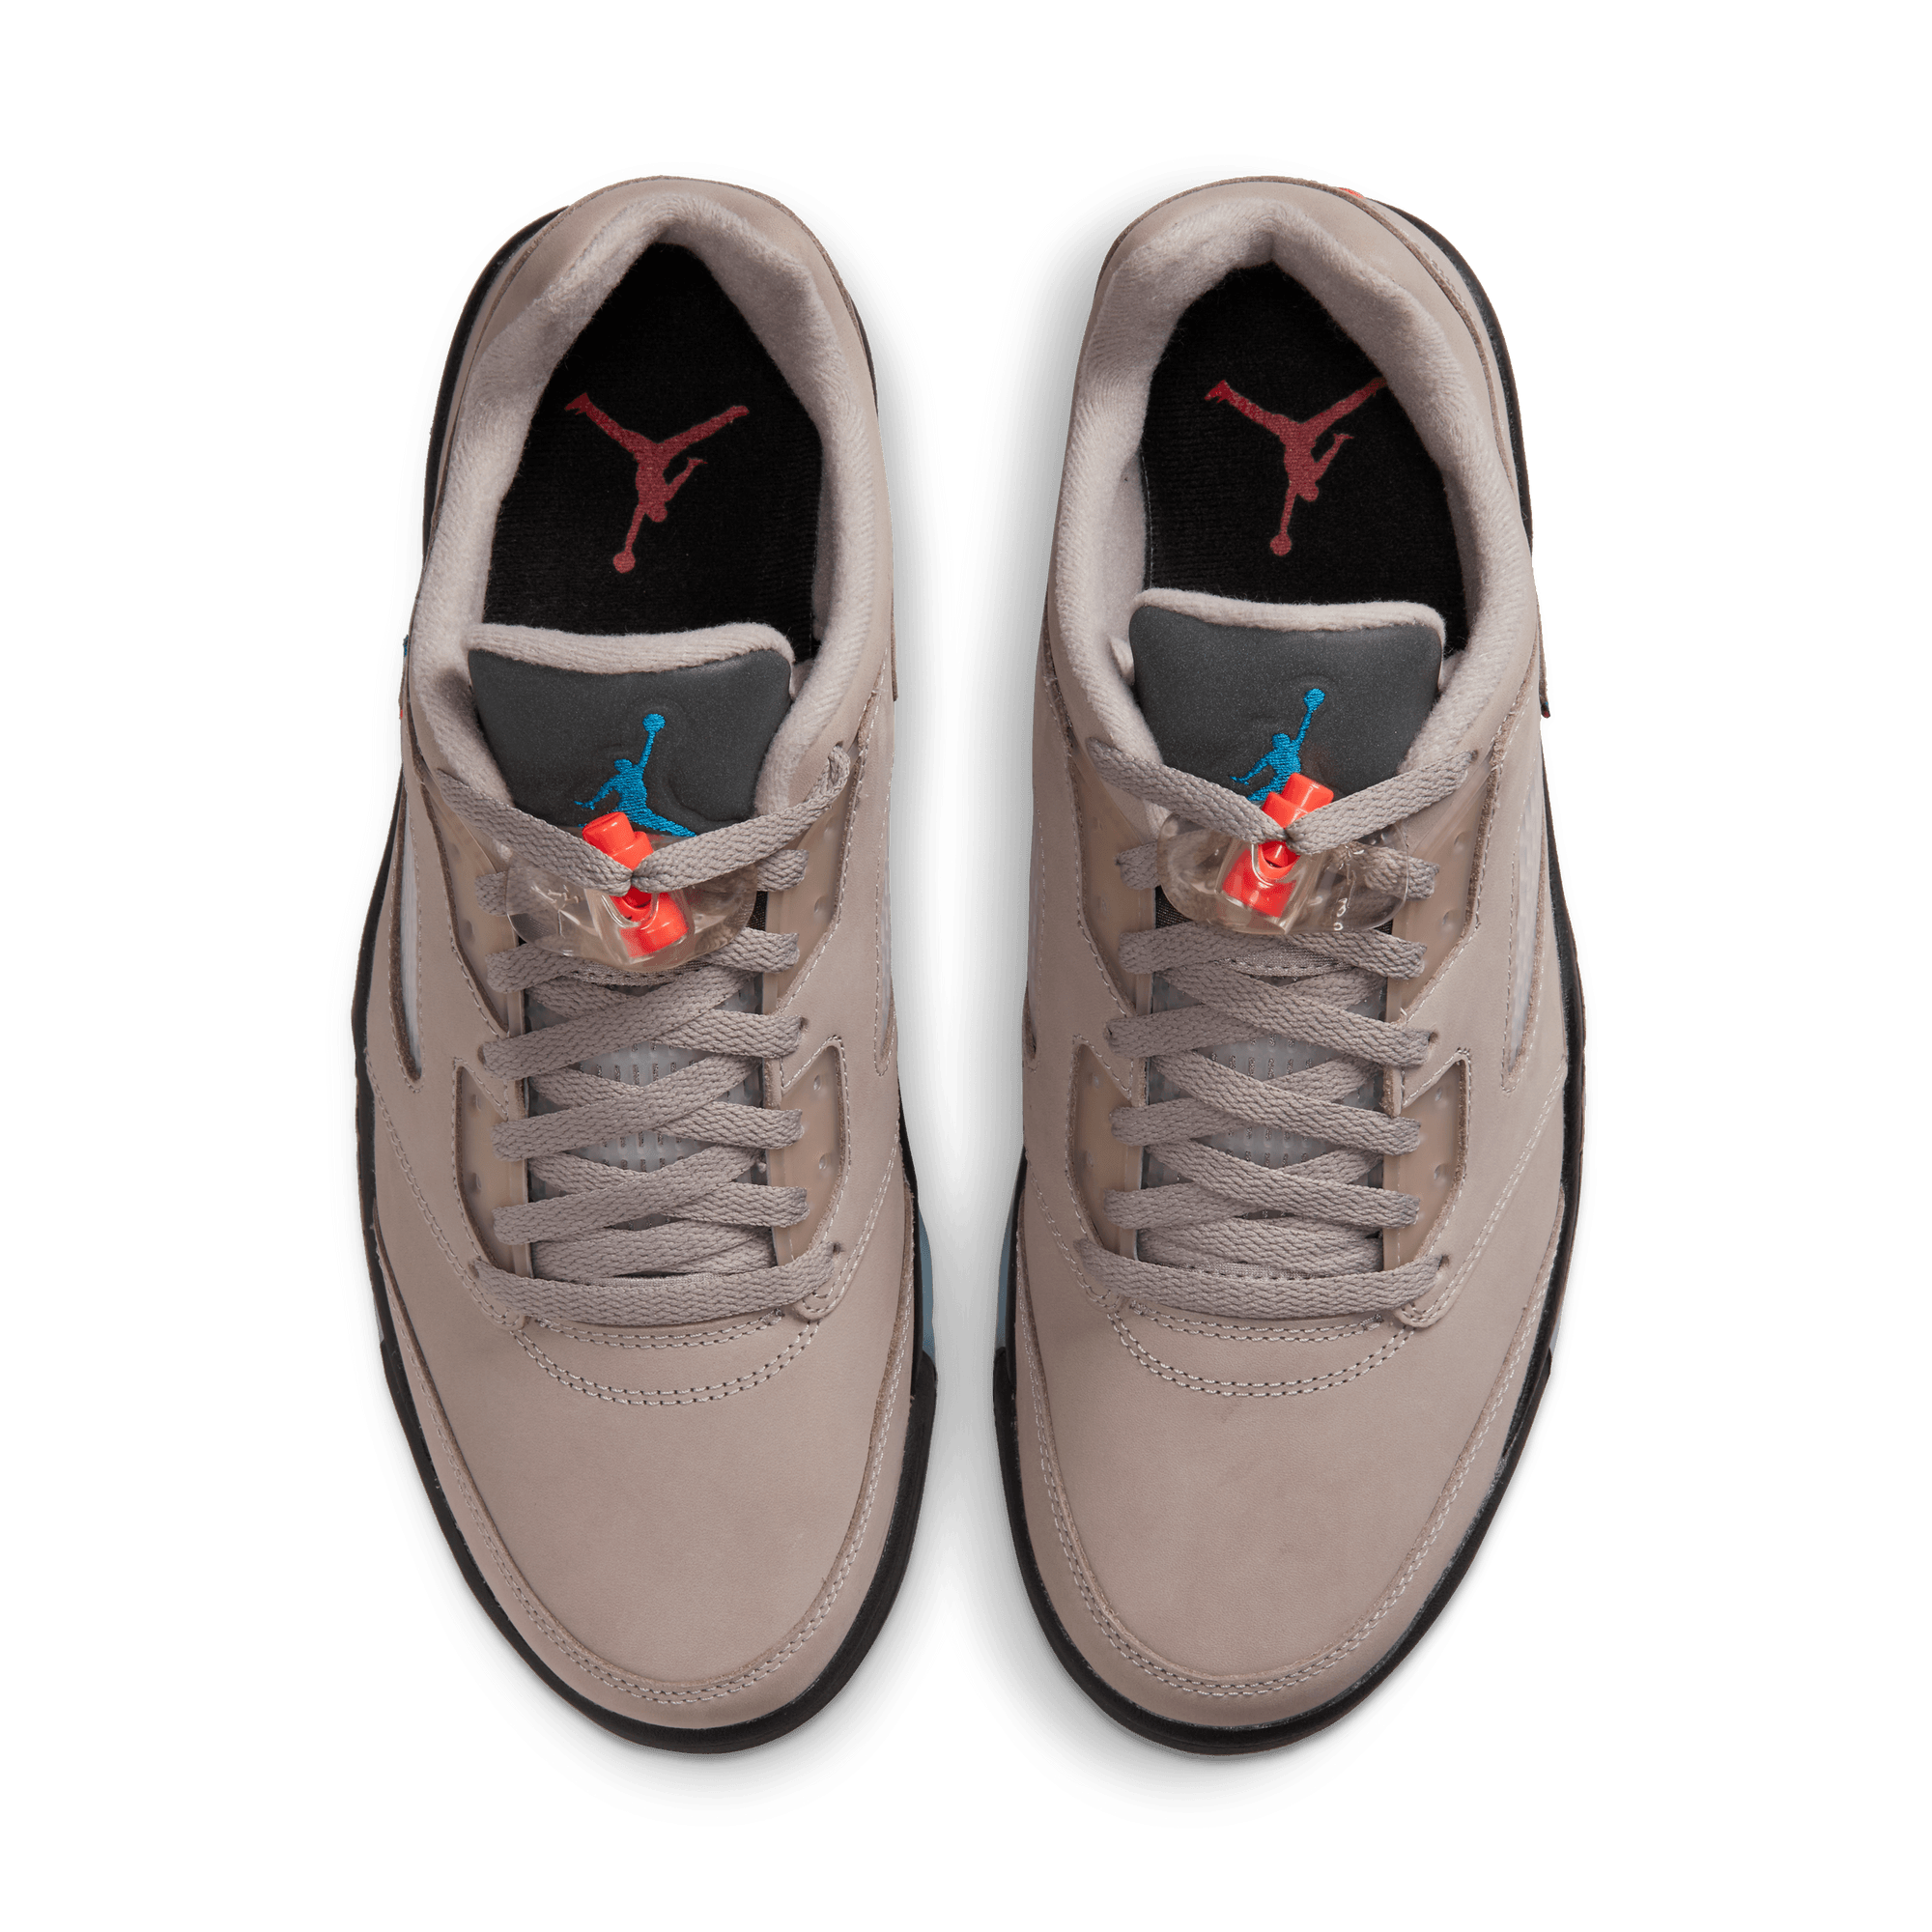 Air Jordan 5 Retro Low PSG - Men's